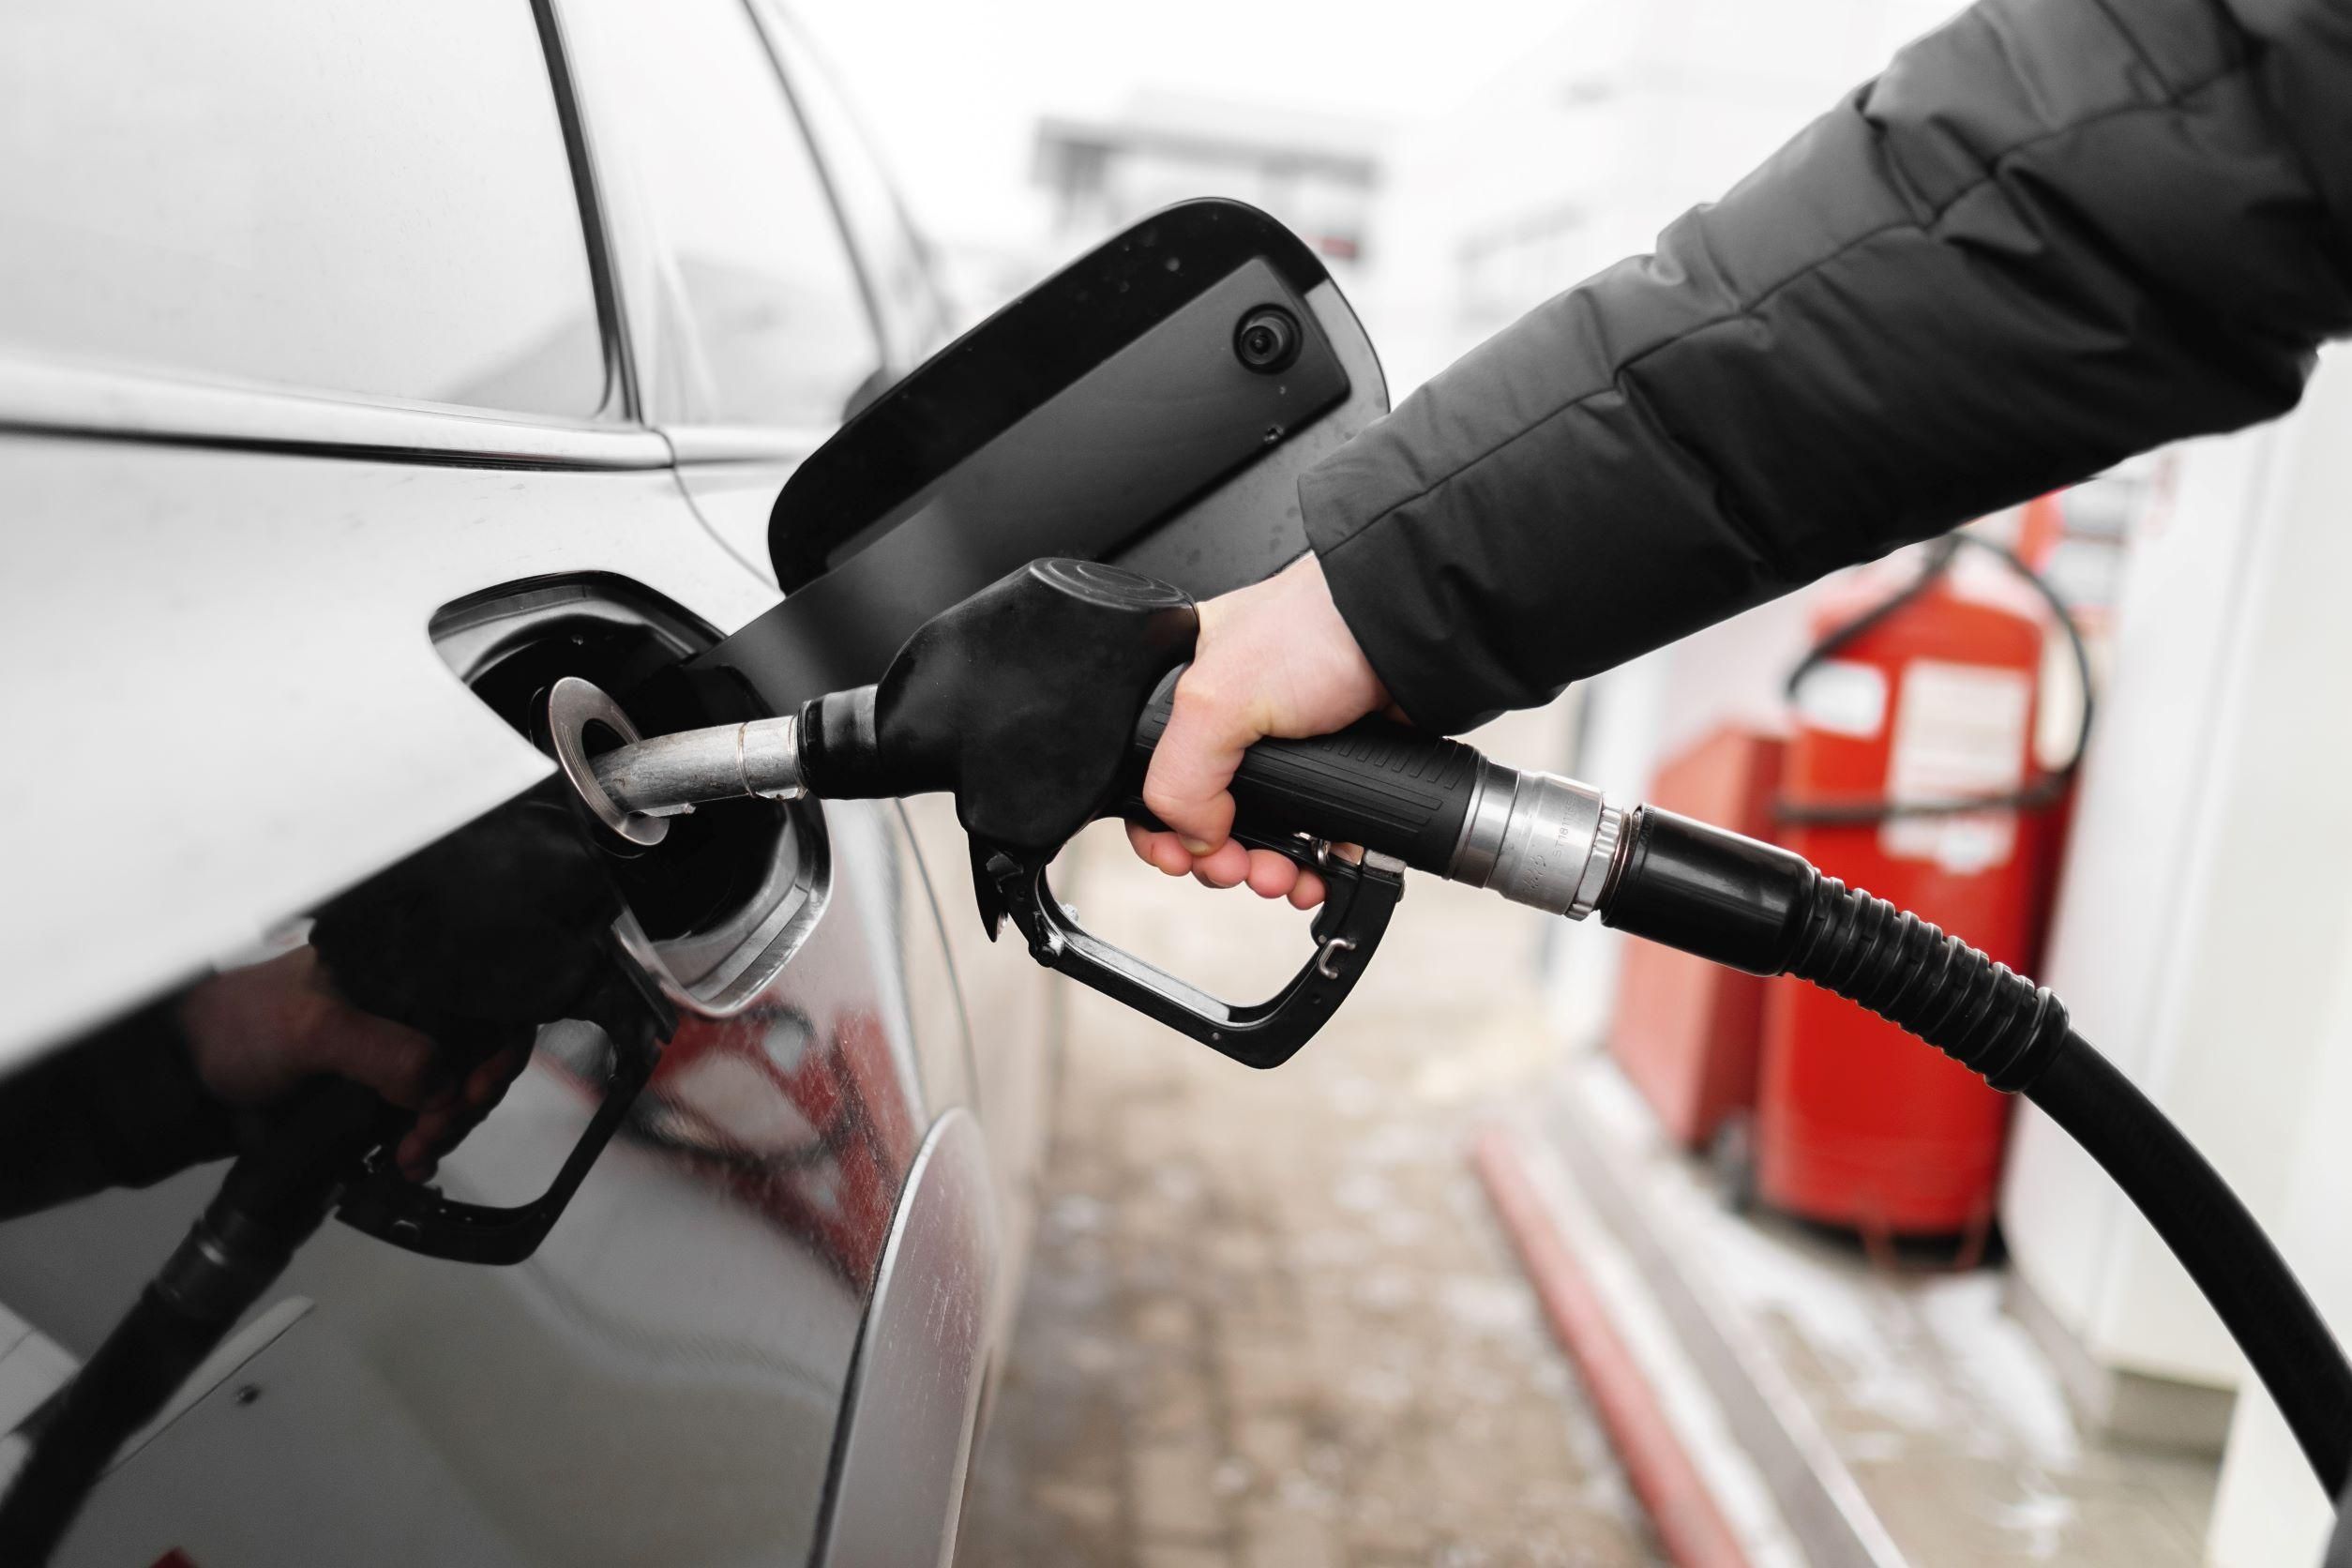 Megindokolta a Mol, miért kapnek bizonyos benzinkutak a megrendeltnél kevesebb üzemanyagot